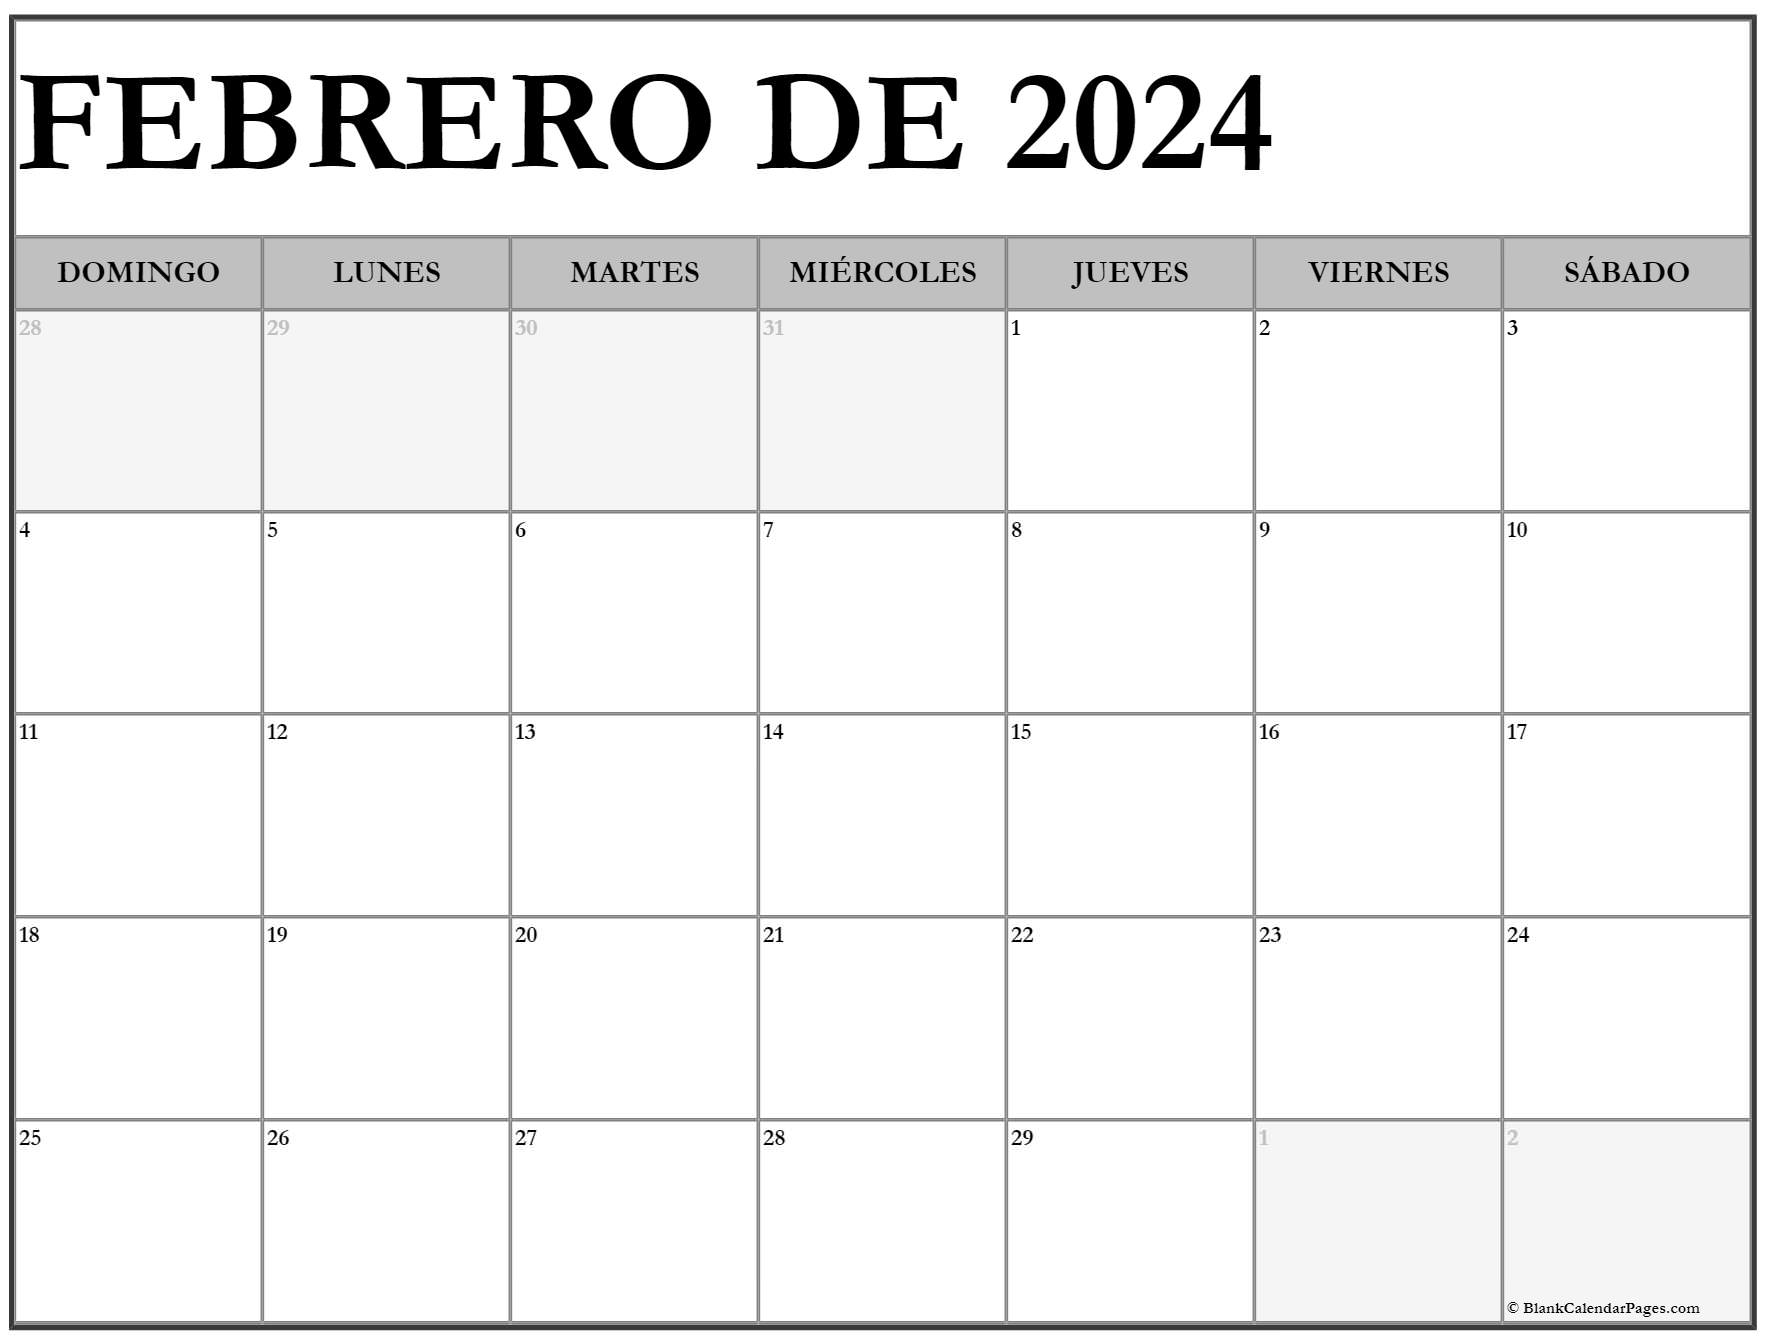 febrero de 2024 calendario gratis Calendario febrero